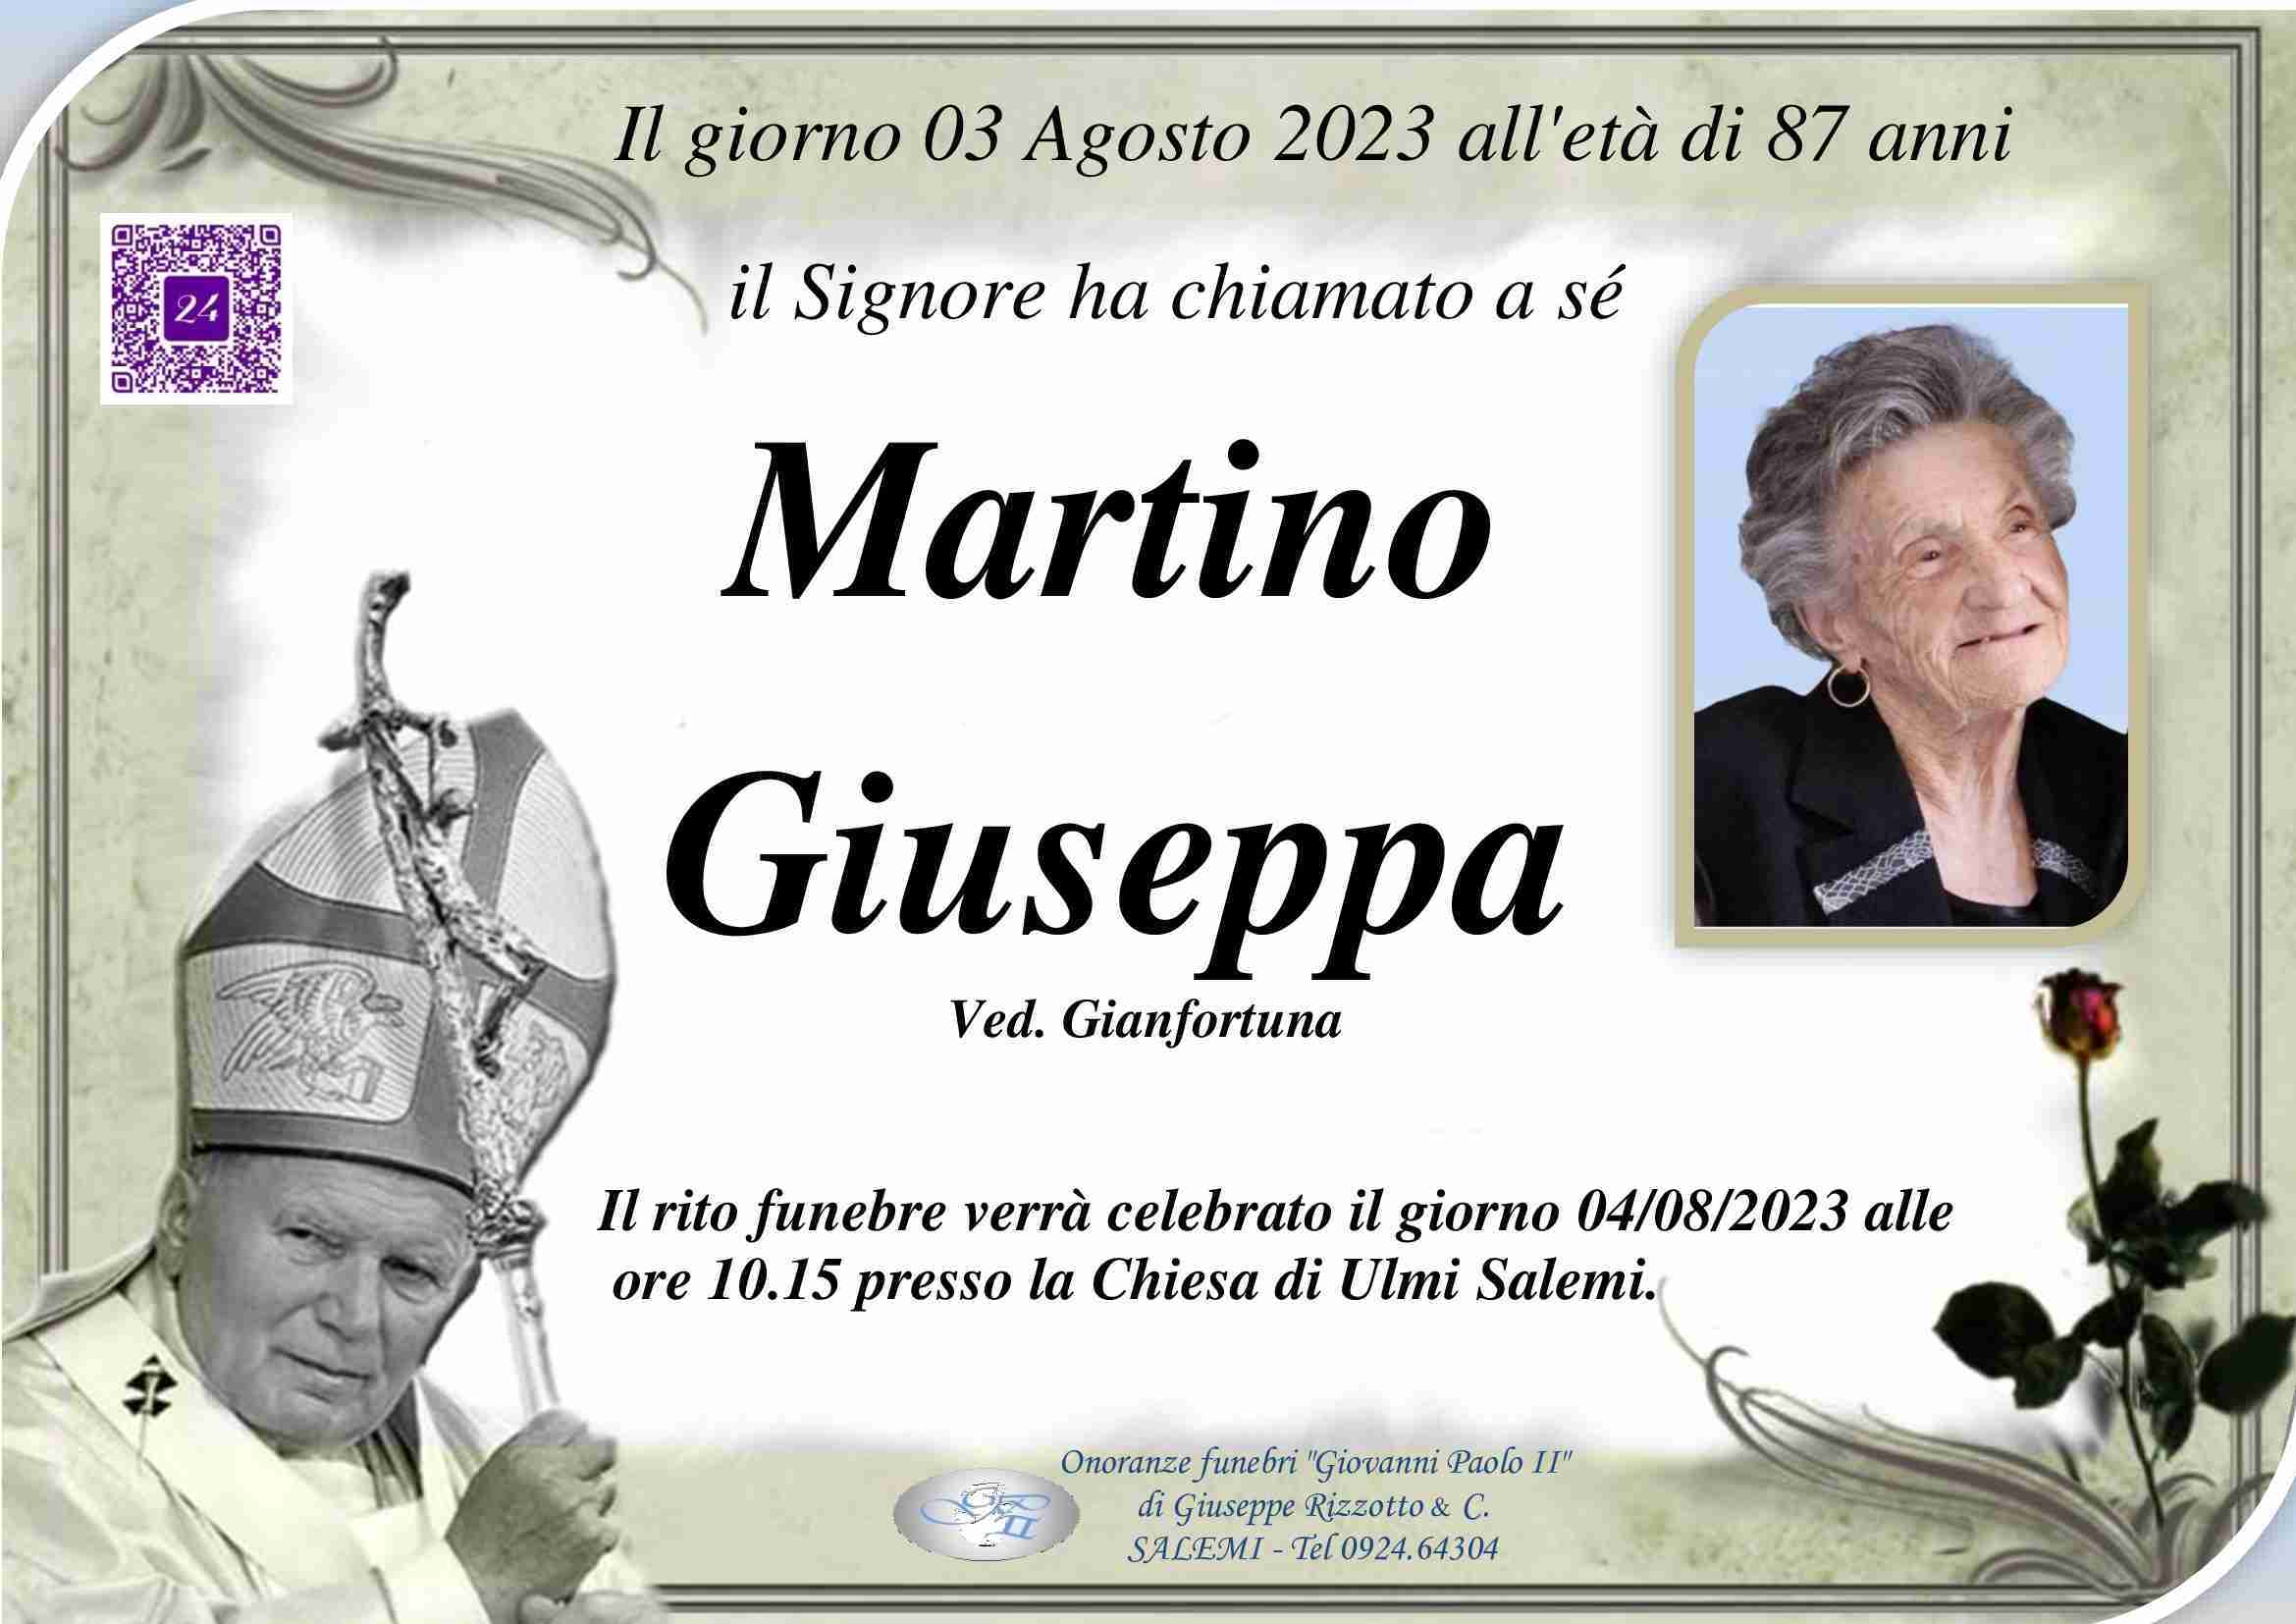 Giuseppa Martino